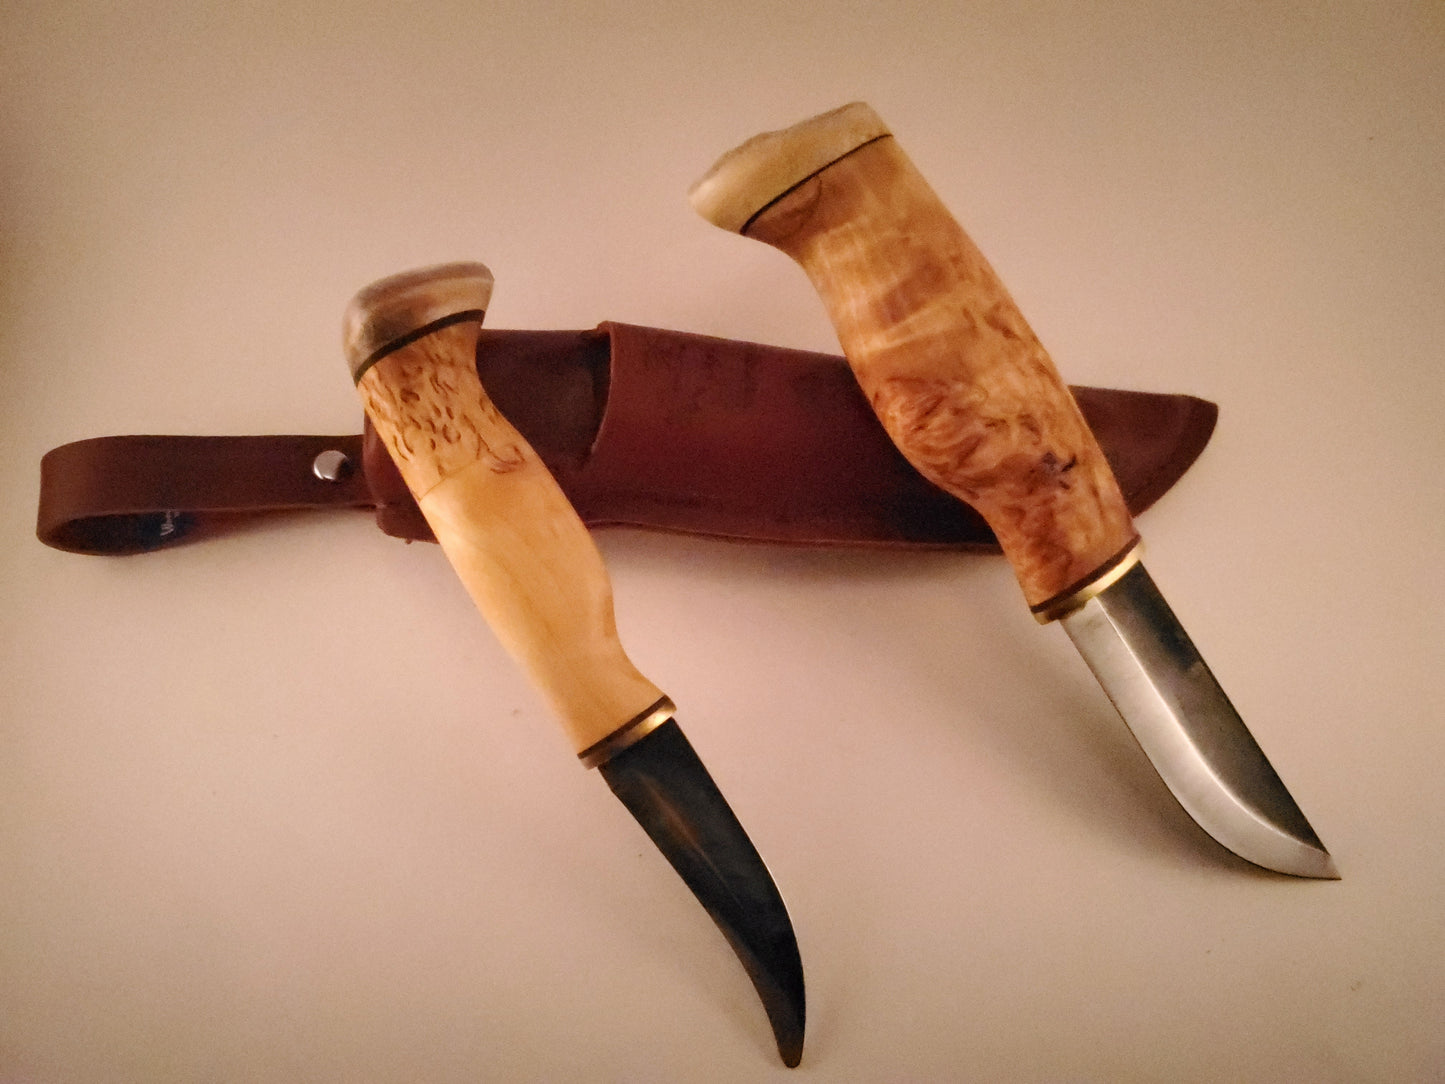 Wood Jewel Double Combo Set Bushcraft Outdoor Knife Puukko